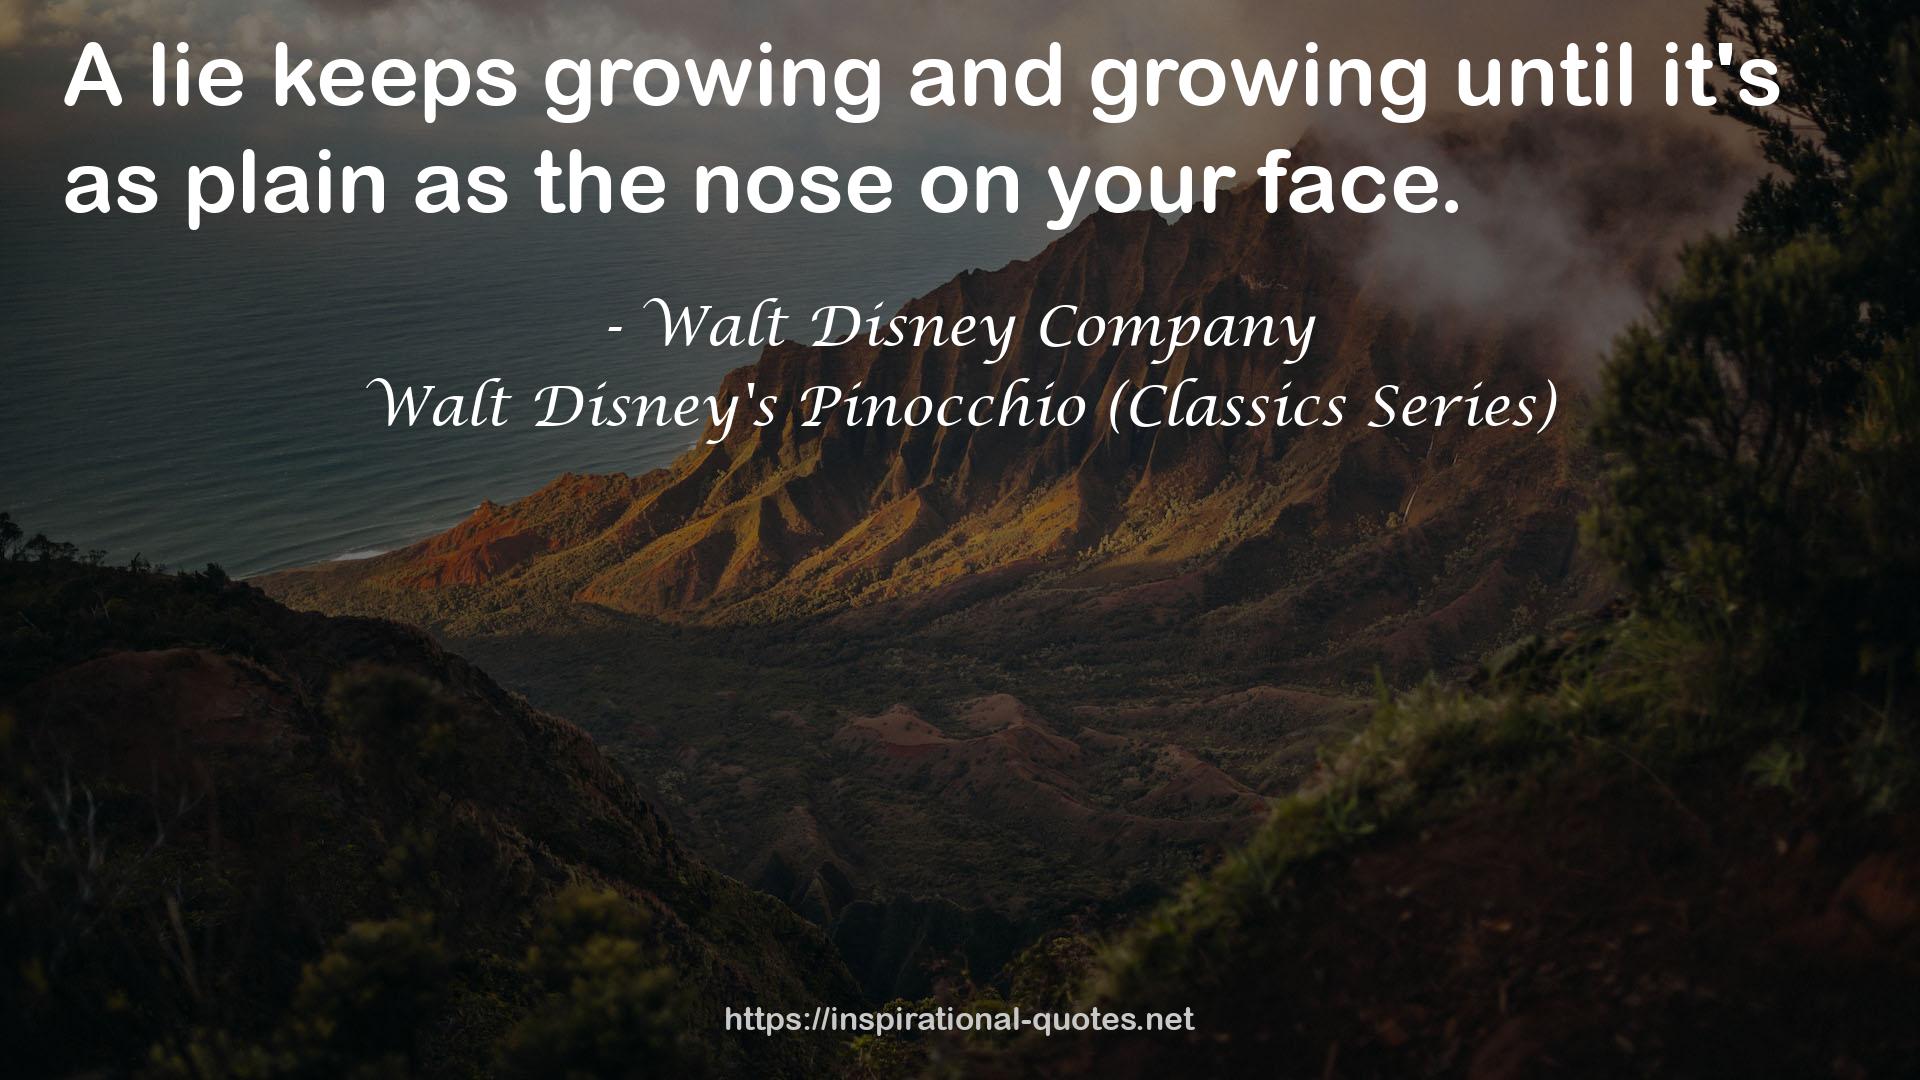 Walt Disney's Pinocchio (Classics Series) QUOTES